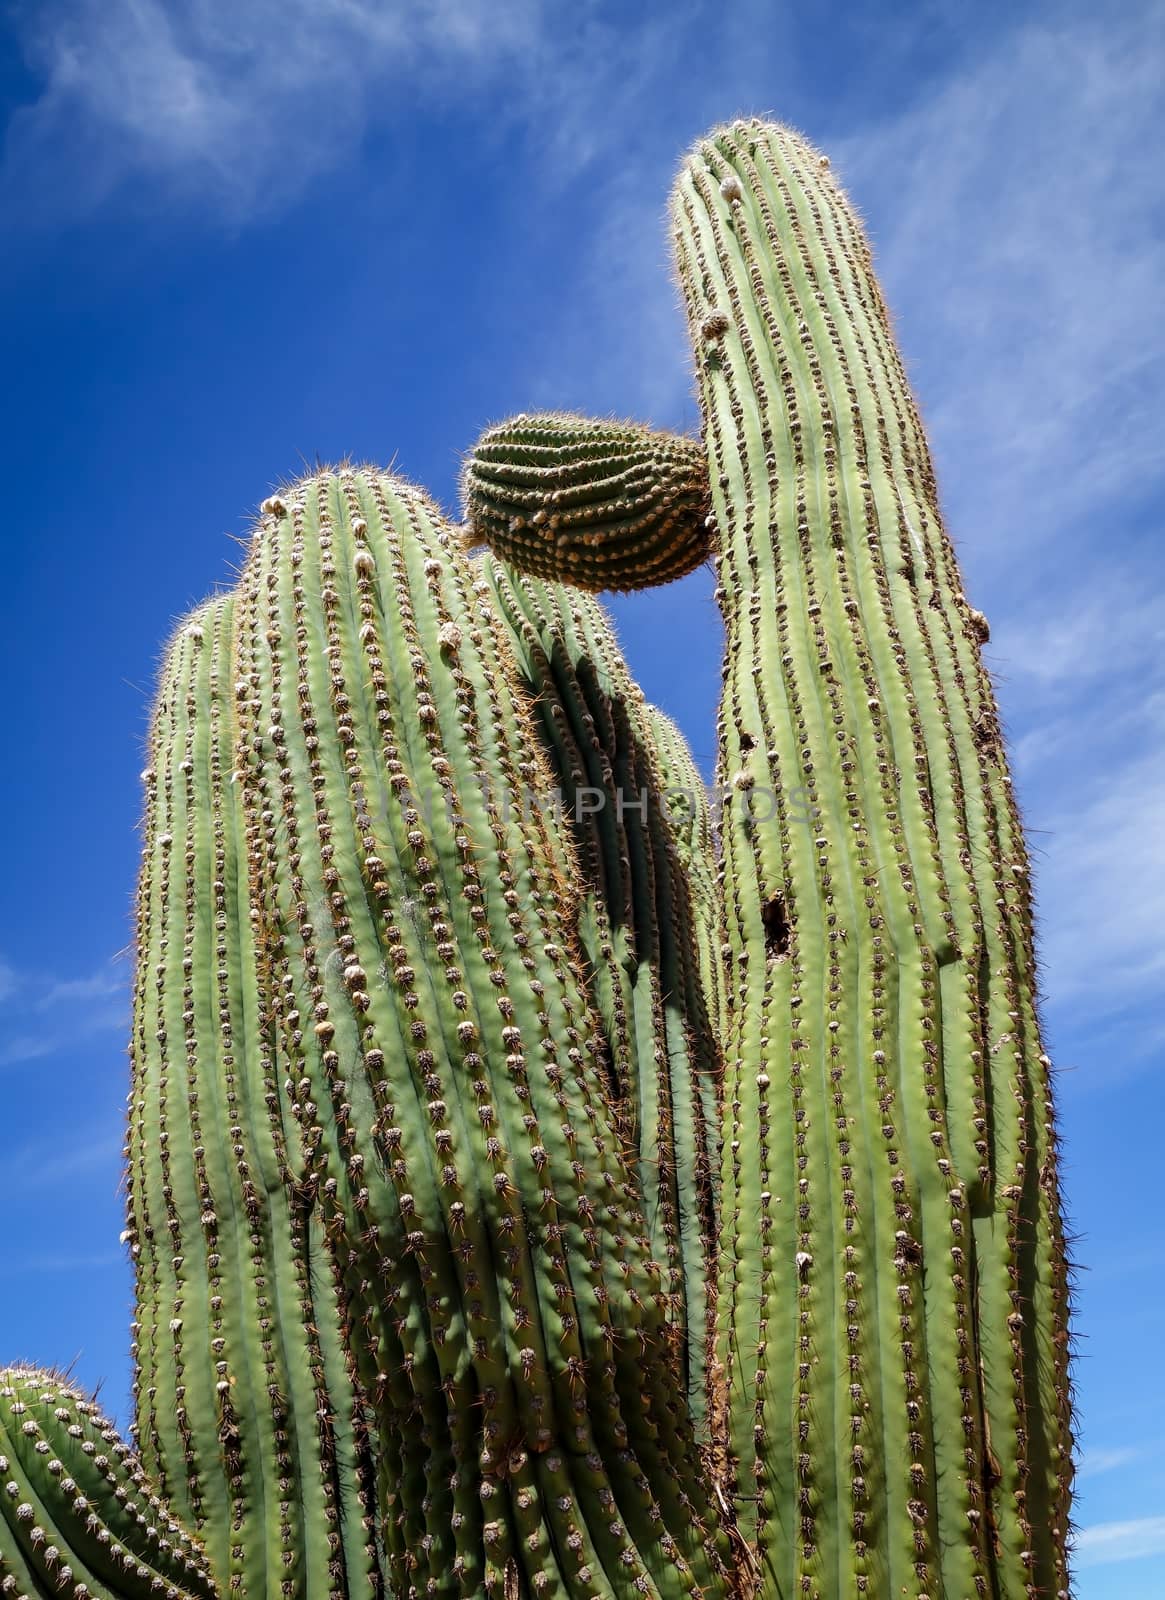 Giant cactus close up view. Tilcara, Argentina